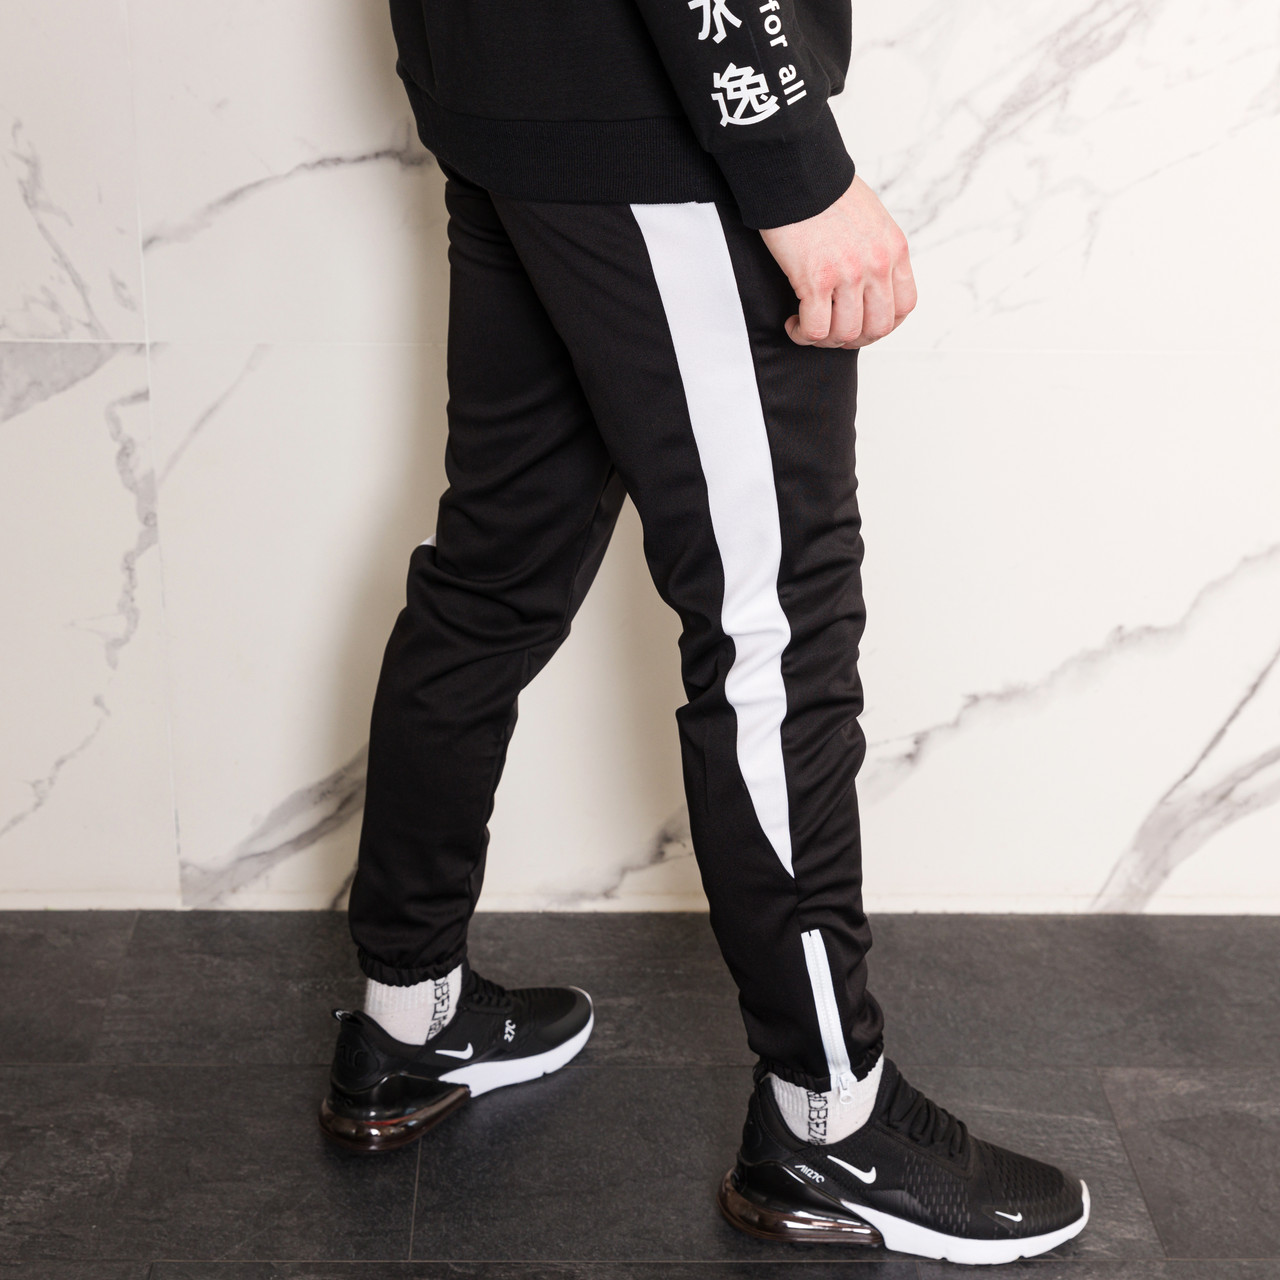 Спортивные штаны черные с белым лампасом мужские бренд ТУР модель Рокки (Rocky) TURWEAR - Фото 4